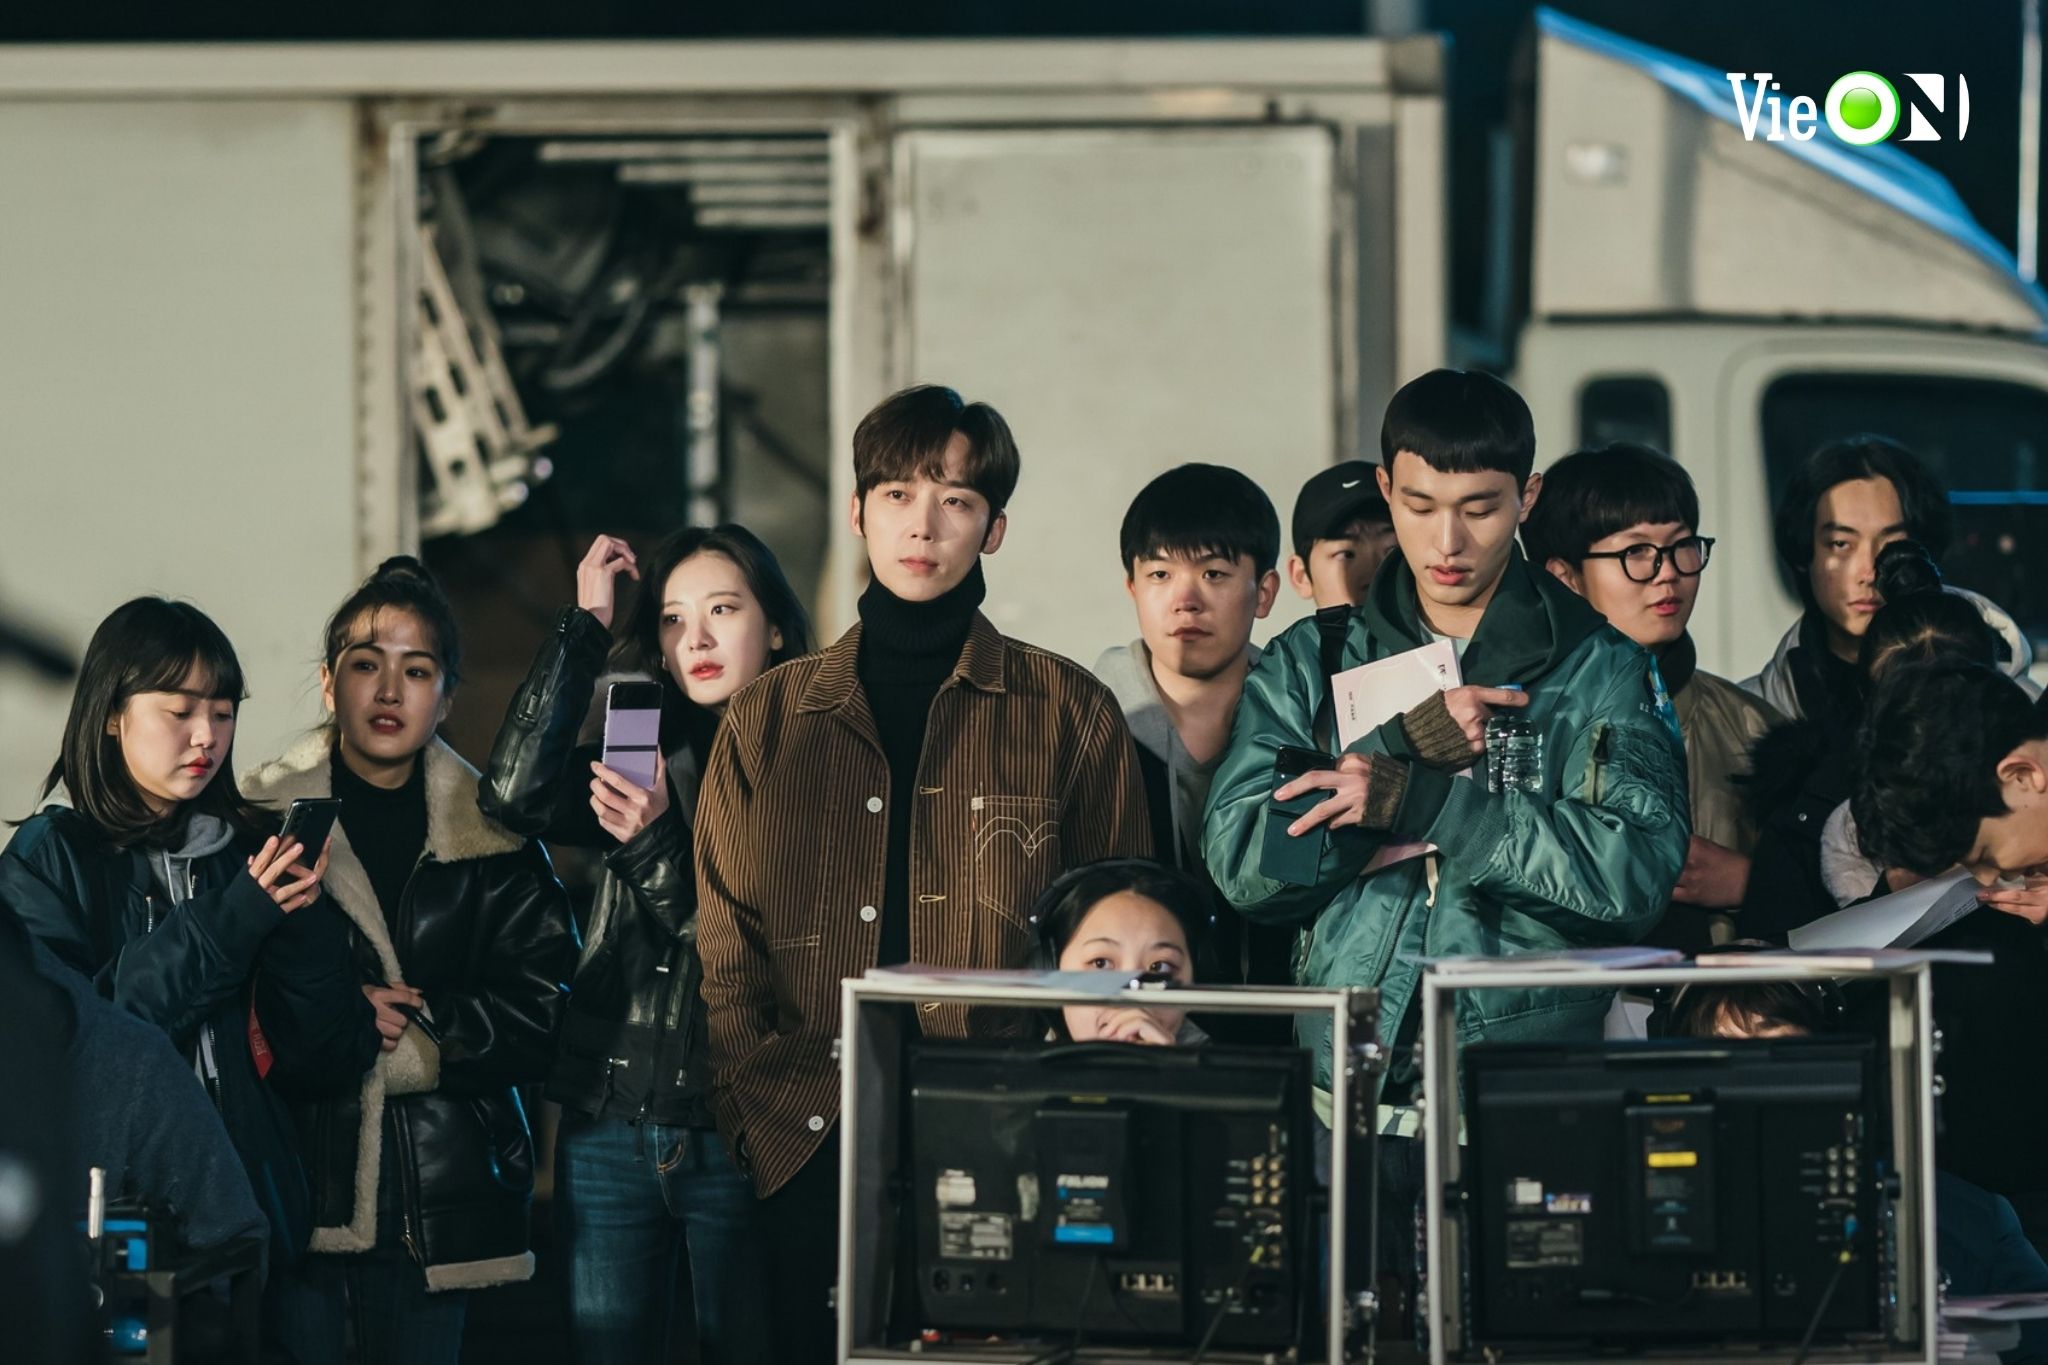 Shooting Star của Lee Sung Kyung và Kim Young Dae: Phơi bày sự thật khắc nghiệt của showbiz Hàn Quốc